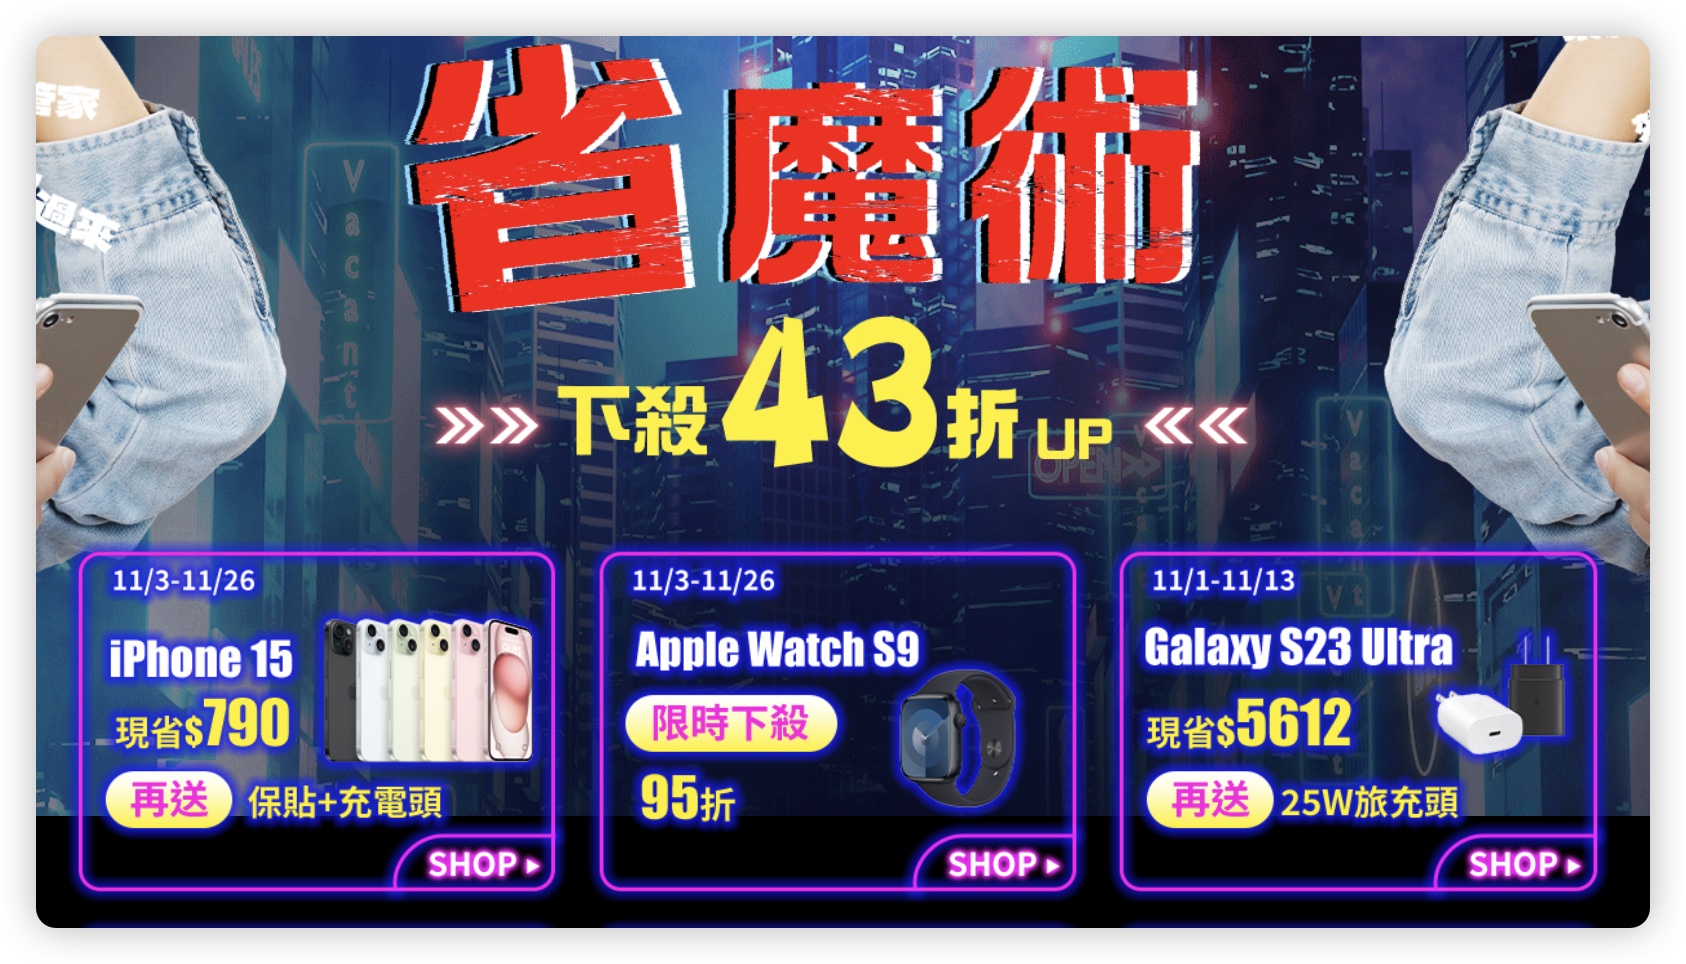 雙 11 iPhone 15 電商平台 購物節 優惠資訊 燦坤